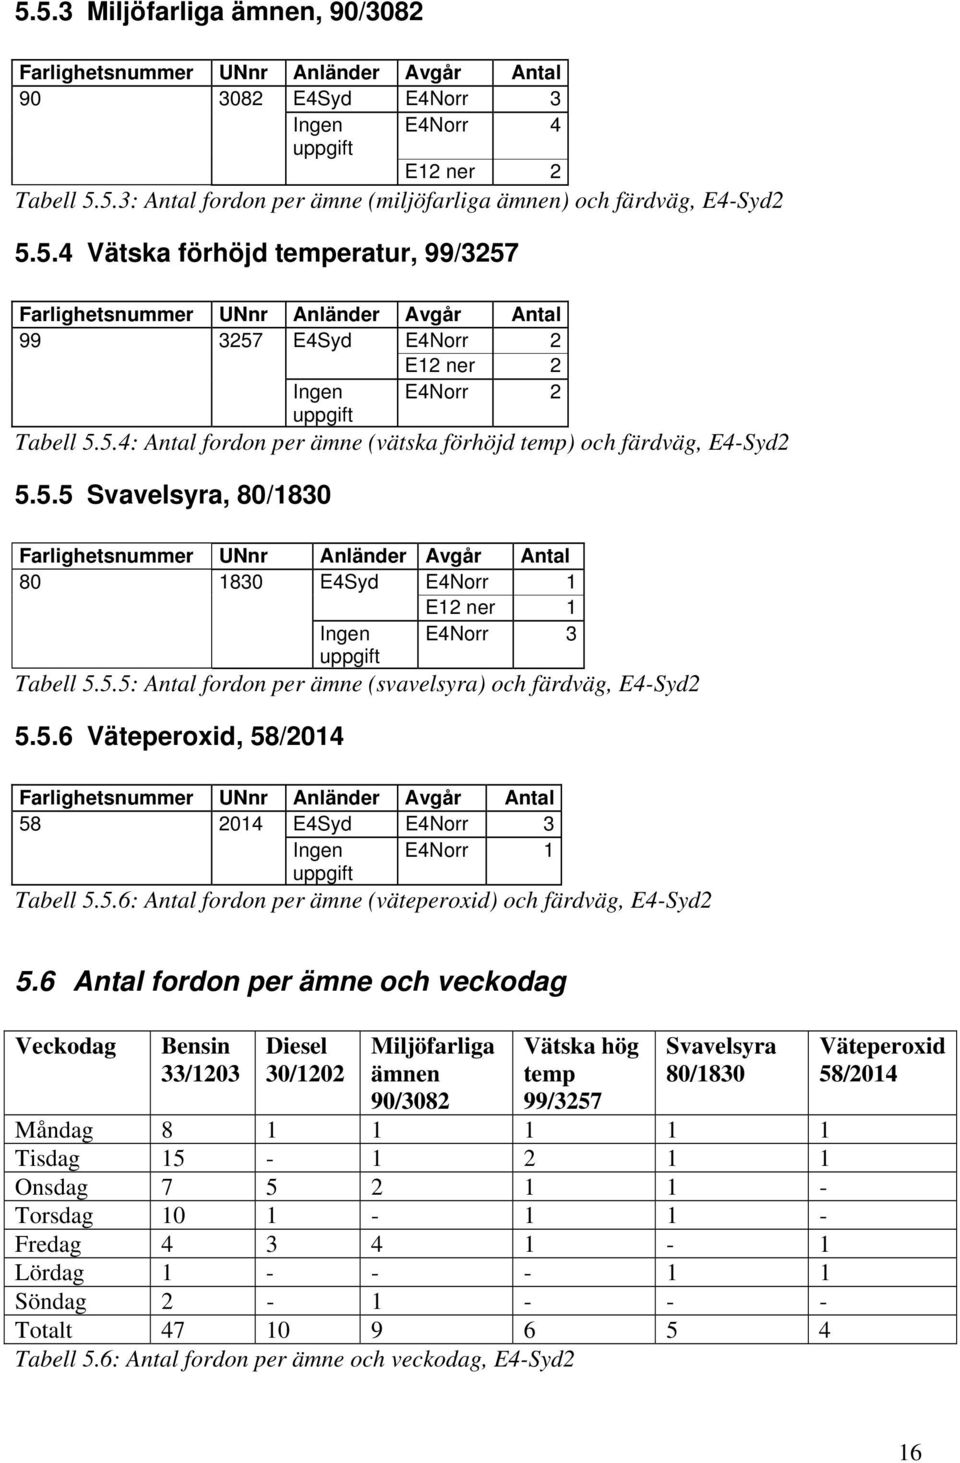 5.6 Väteperoxid, 58/2014 58 2014 E4Syd E4Norr 3 Ingen E4Norr 1 uppgift Tabell 5.5.6: Antal fordon per ämne (väteperoxid) och färdväg, E4-Syd2 5.